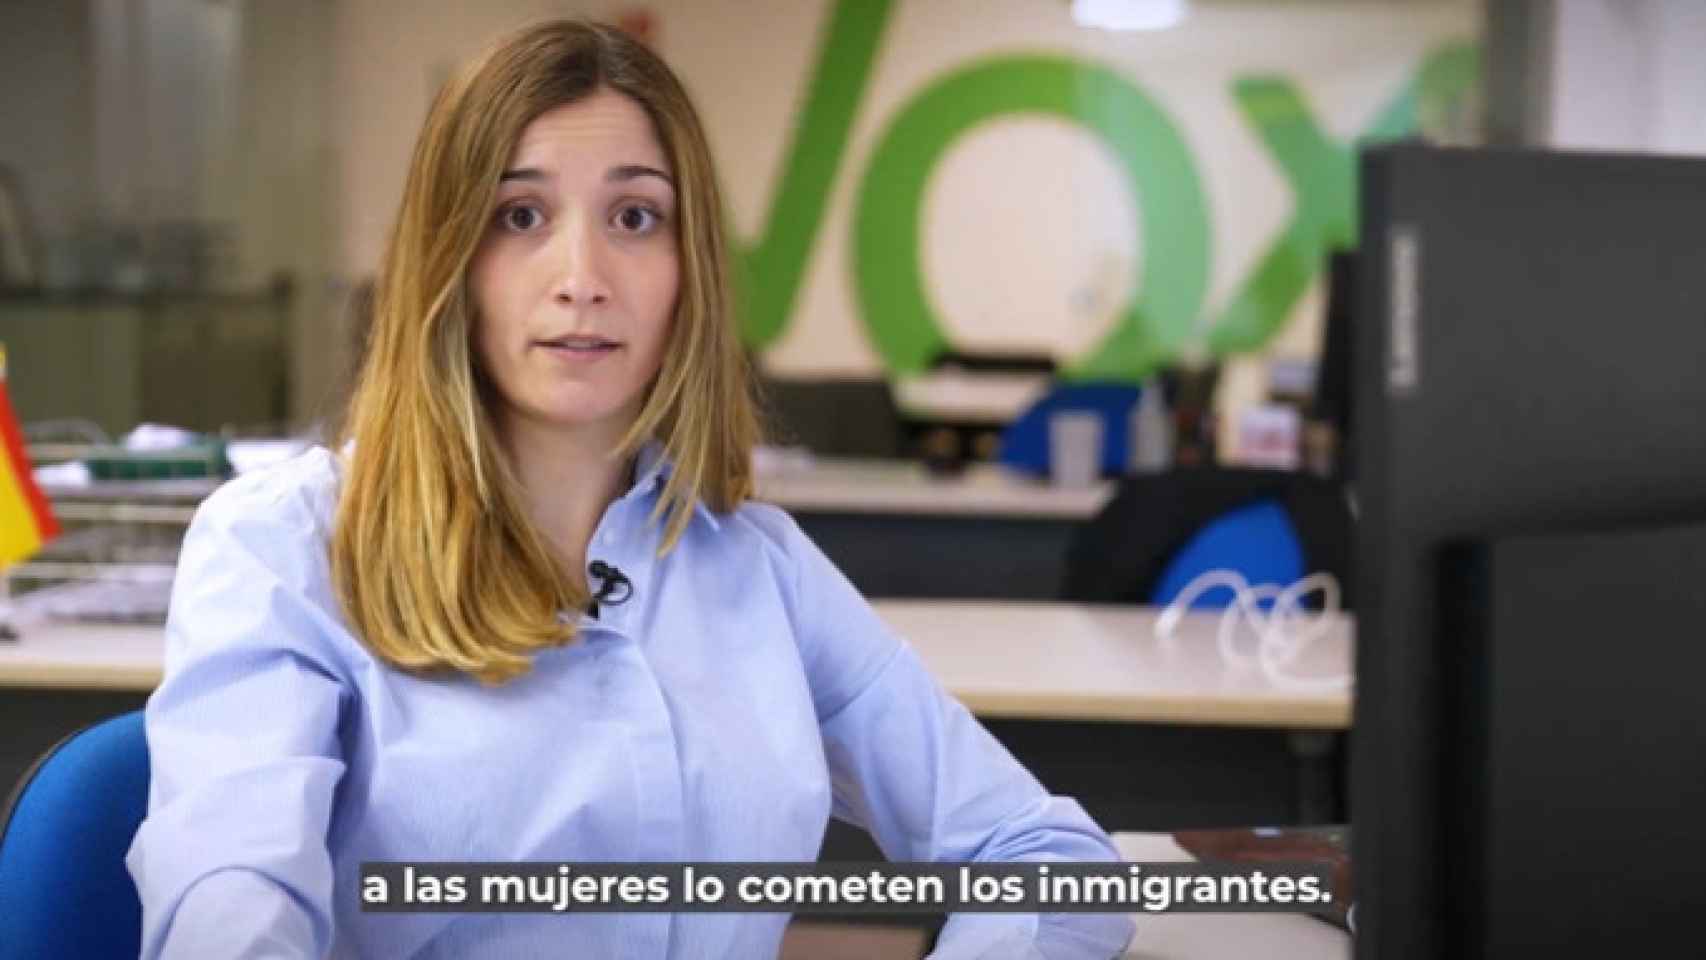 Fragmento del vídeo de campaña de Vox para las elecciones catalanas.